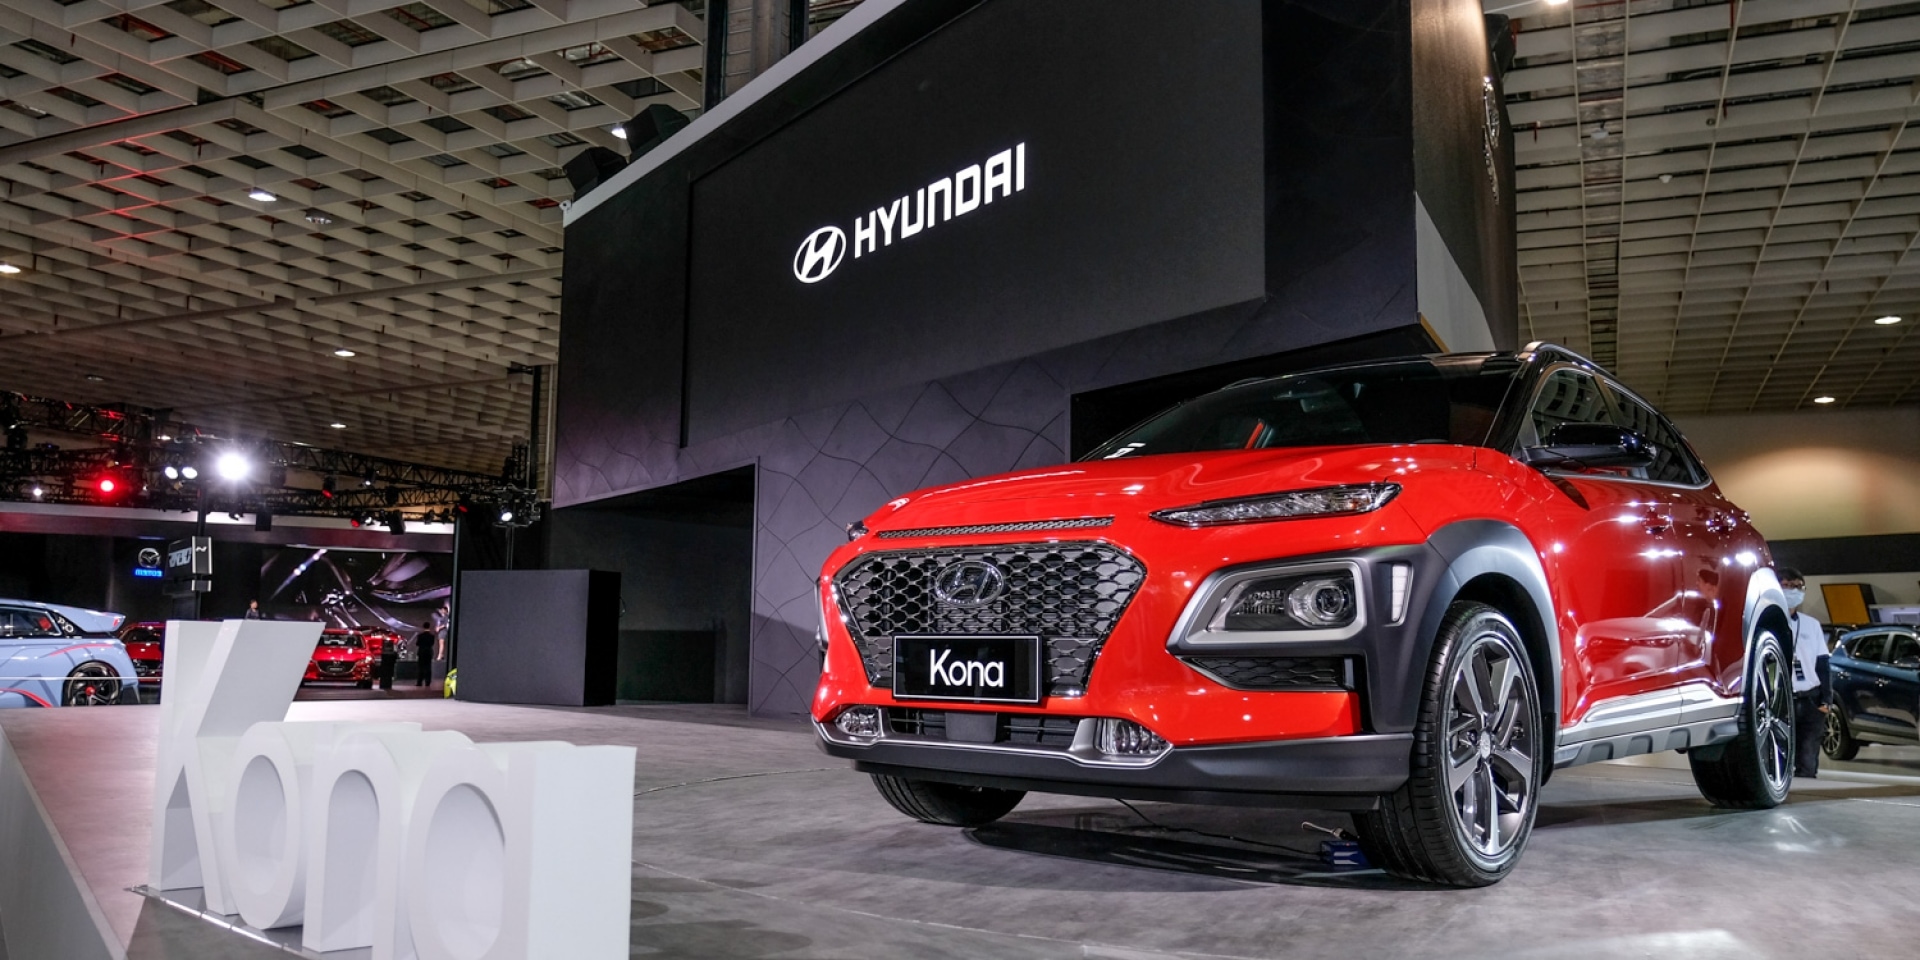 2018世界新車大展。Hyundai Kona即將國產上市